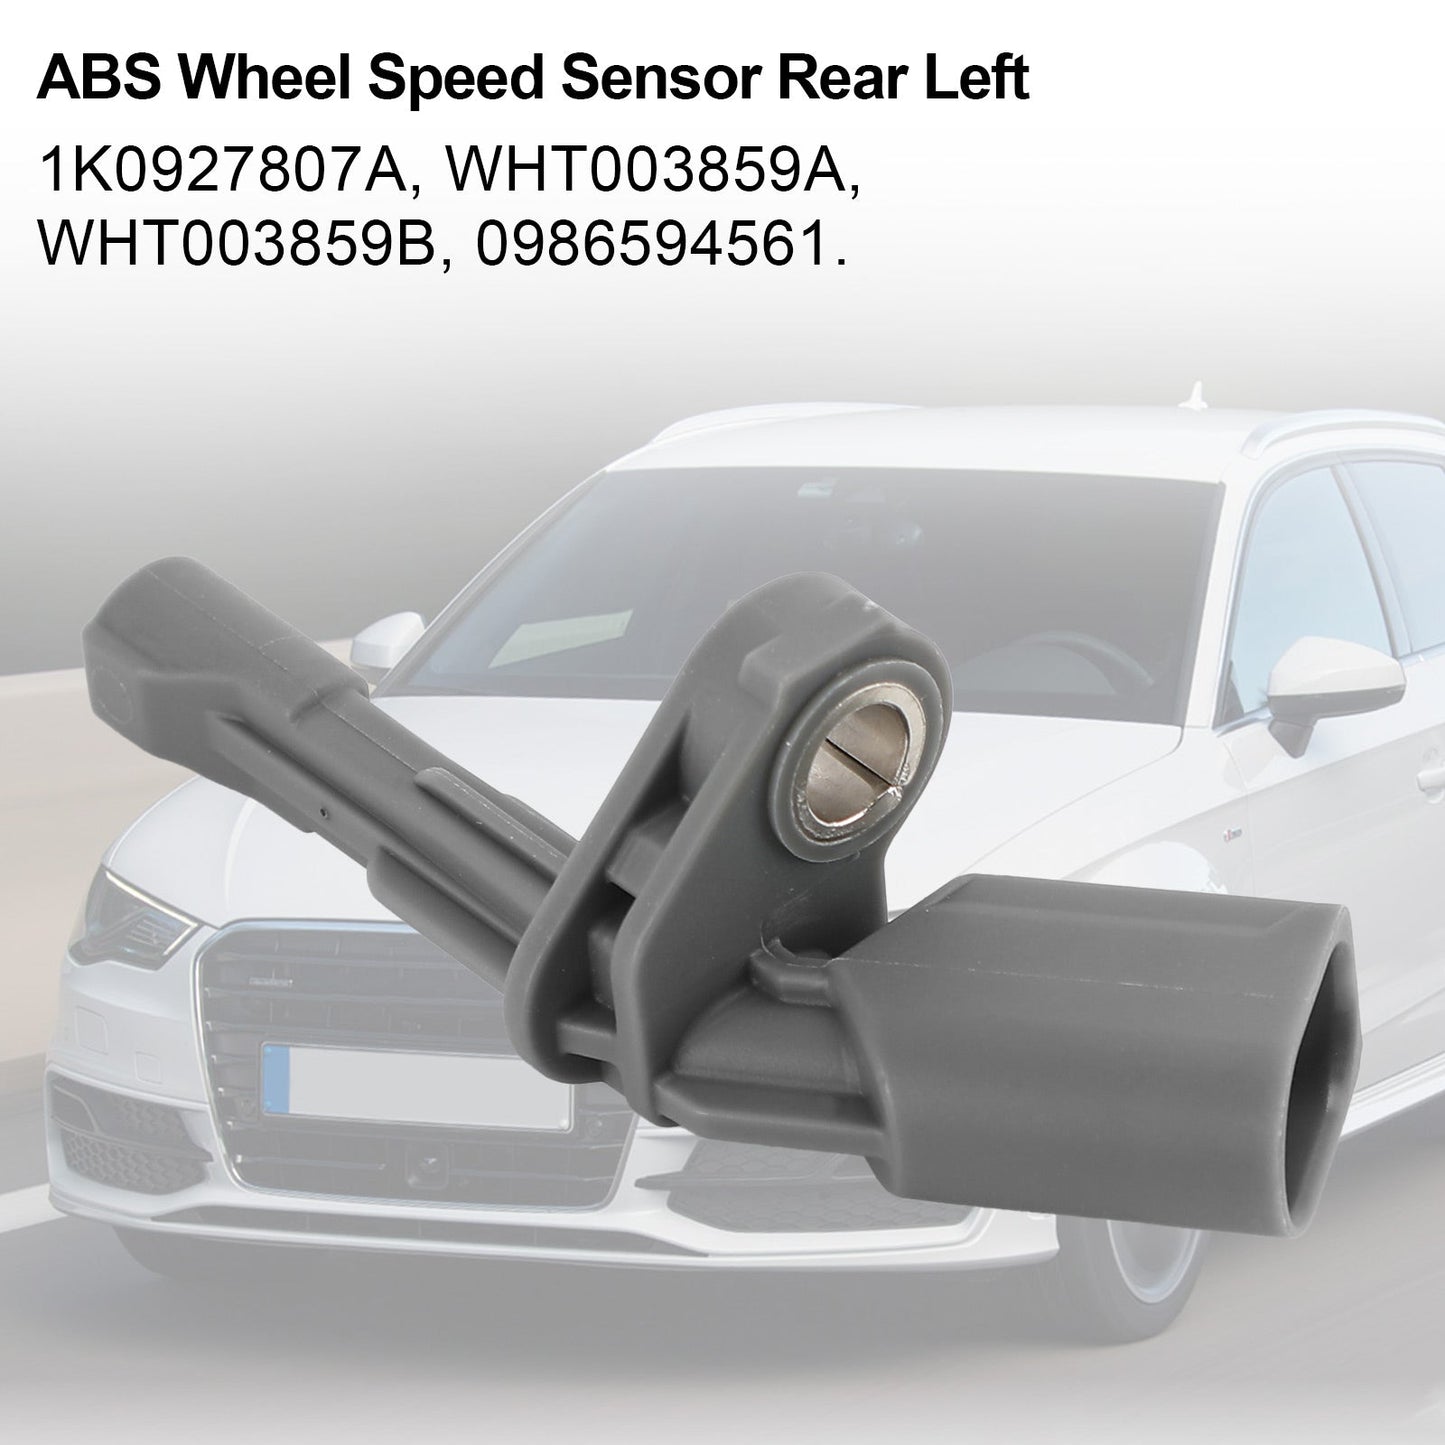 ABS Wheel Speed Sensor Rear Left for Audi Q3 for VW Golf Passat 1K0927807A